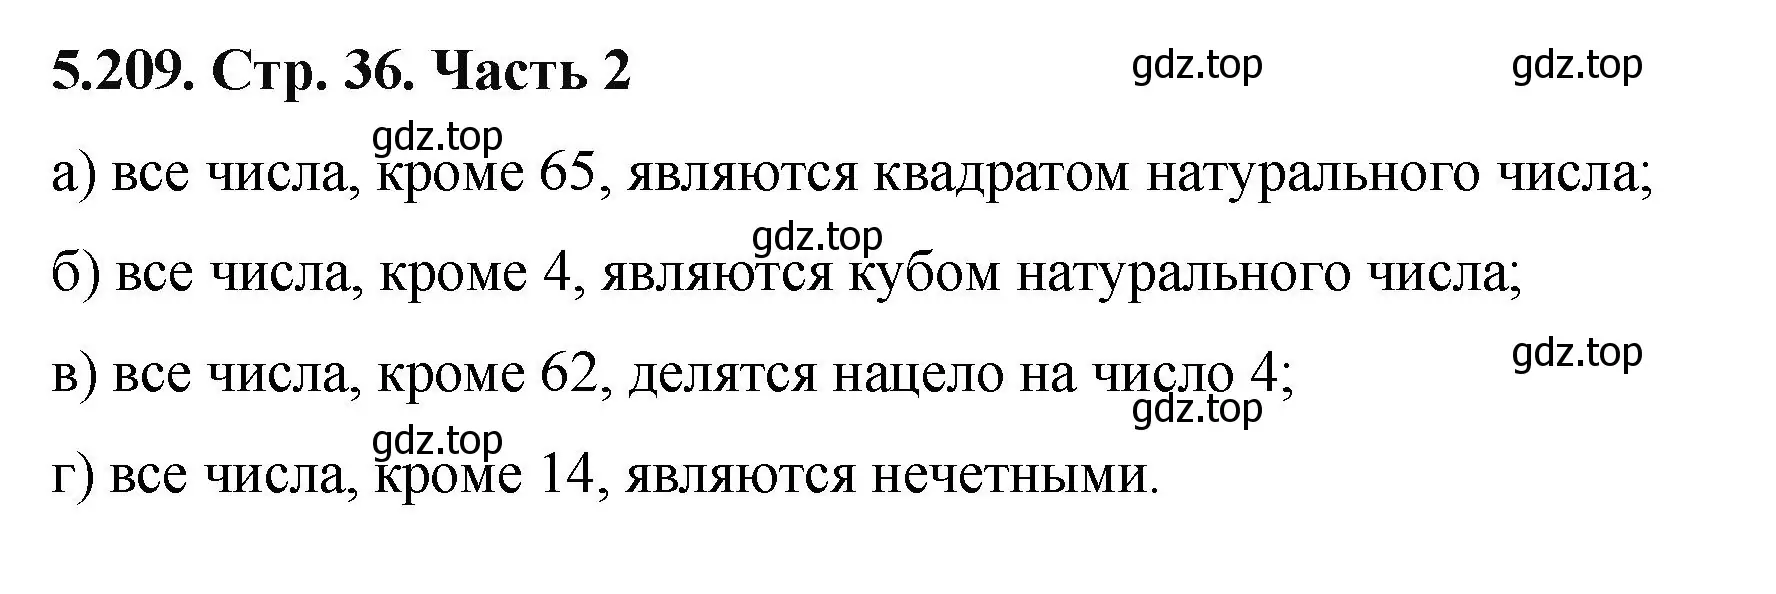 Решение номер 5.209 (страница 36) гдз по математике 5 класс Виленкин, Жохов, учебник 2 часть